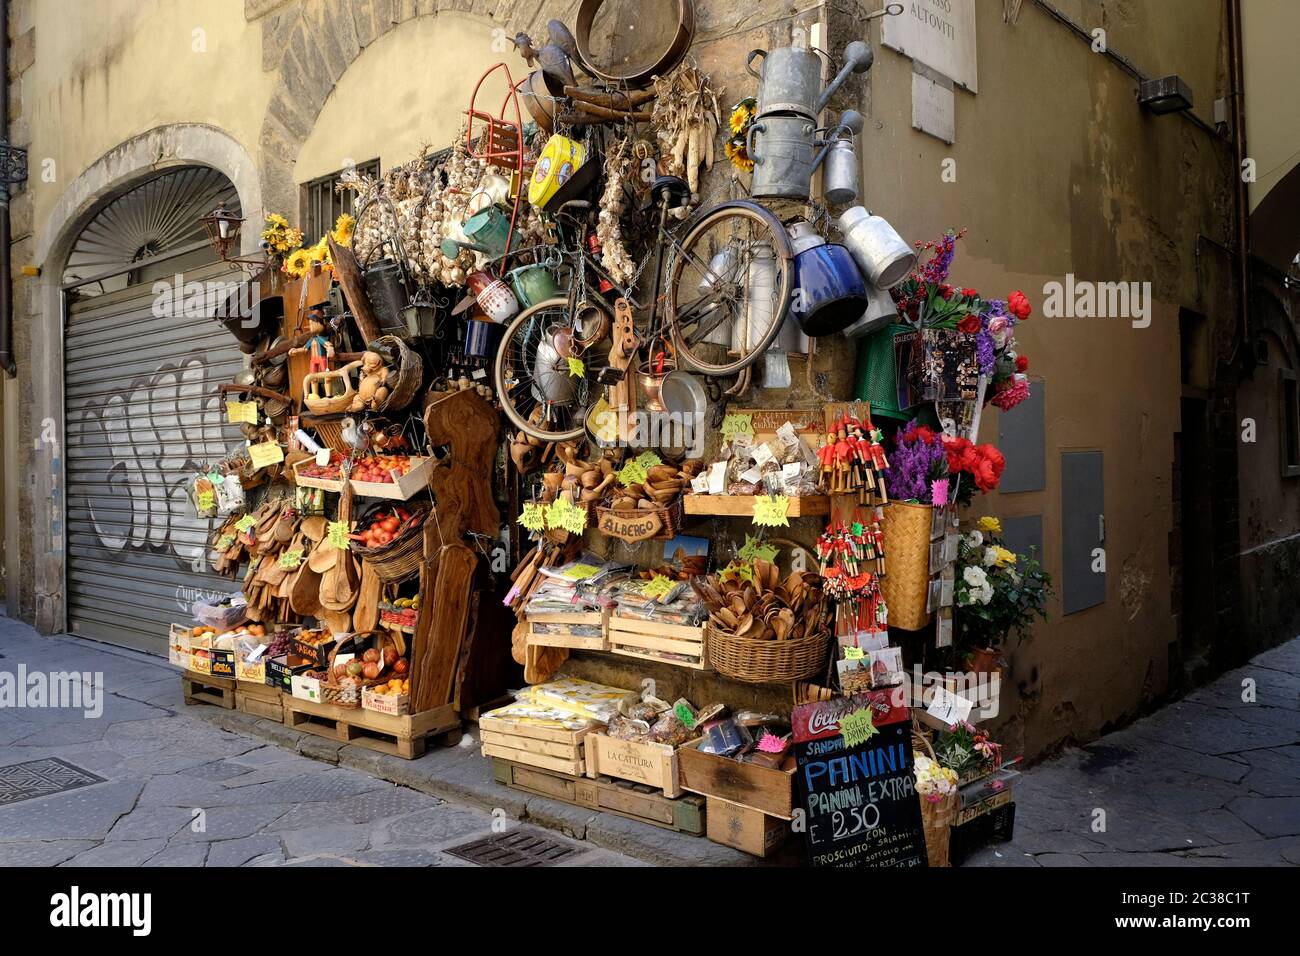 Tienda con mucho carácter que muestra frutas, verduras y artesanías en una calle lateral de Florencia cerca del Arno. Foto de stock